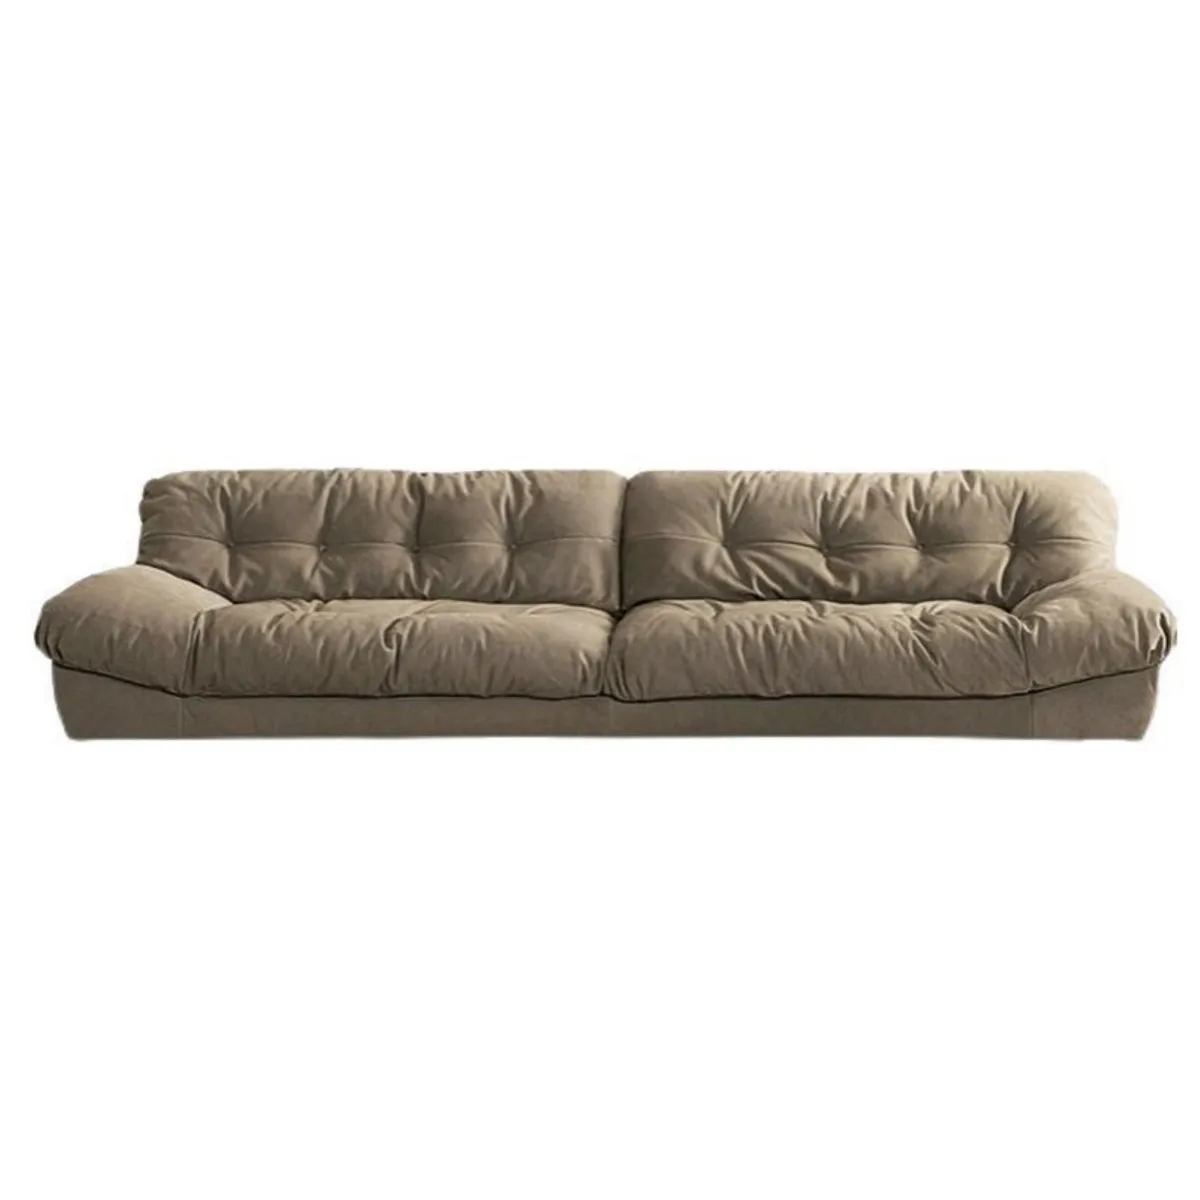 Yeni tasarım Modern moda üç kanepe seti oturma odası mobilya minimalizm kumaş kanepe